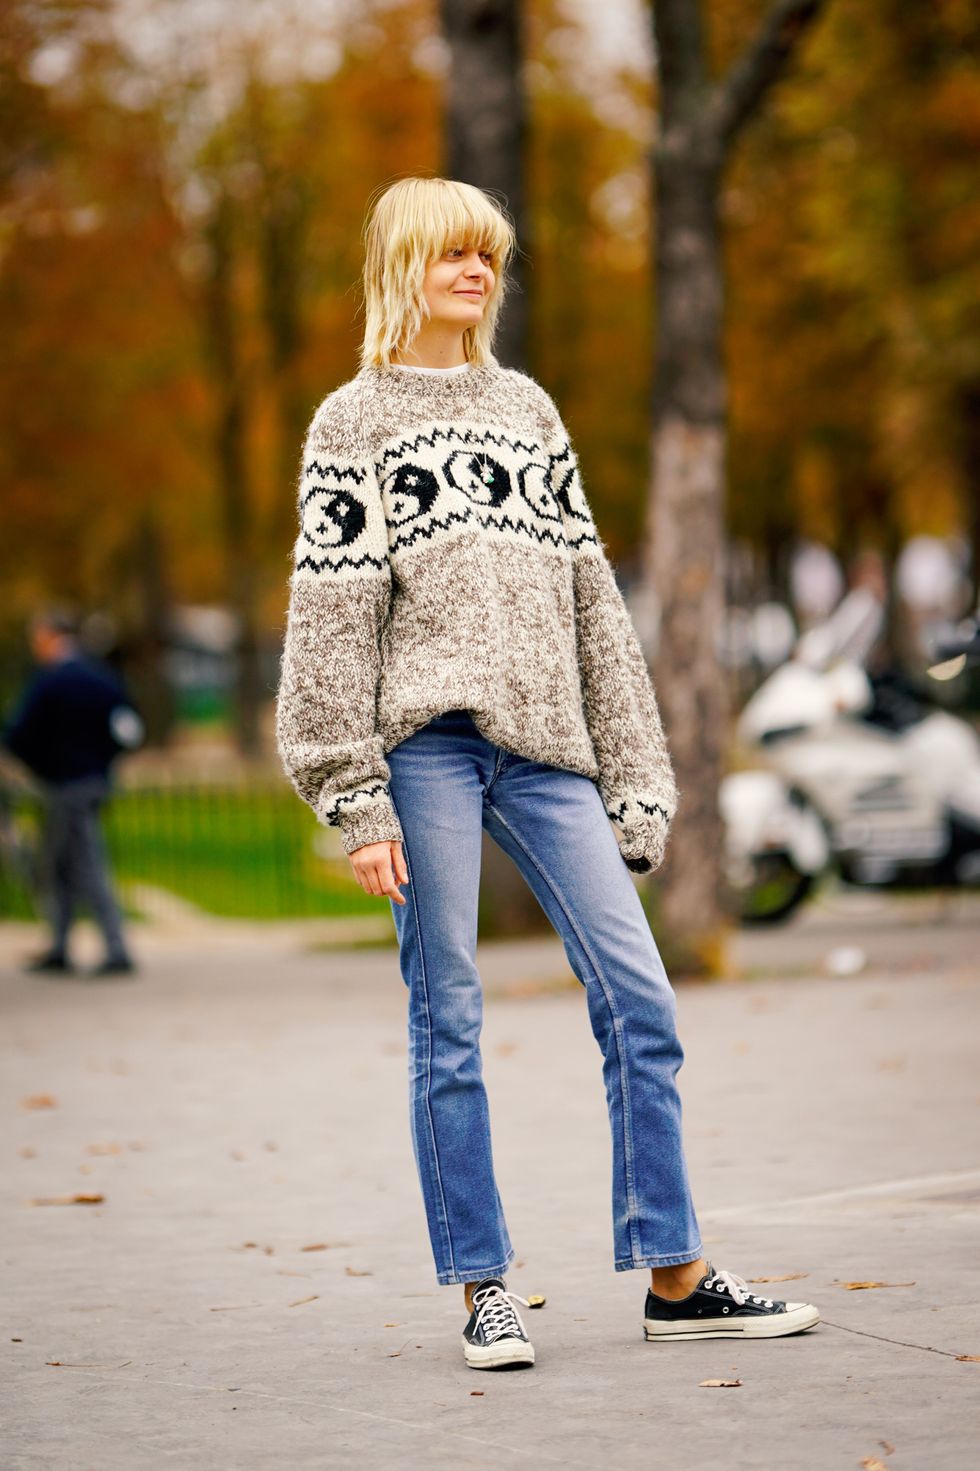 Jeans rectos  Cut & Paste – Blog de Moda